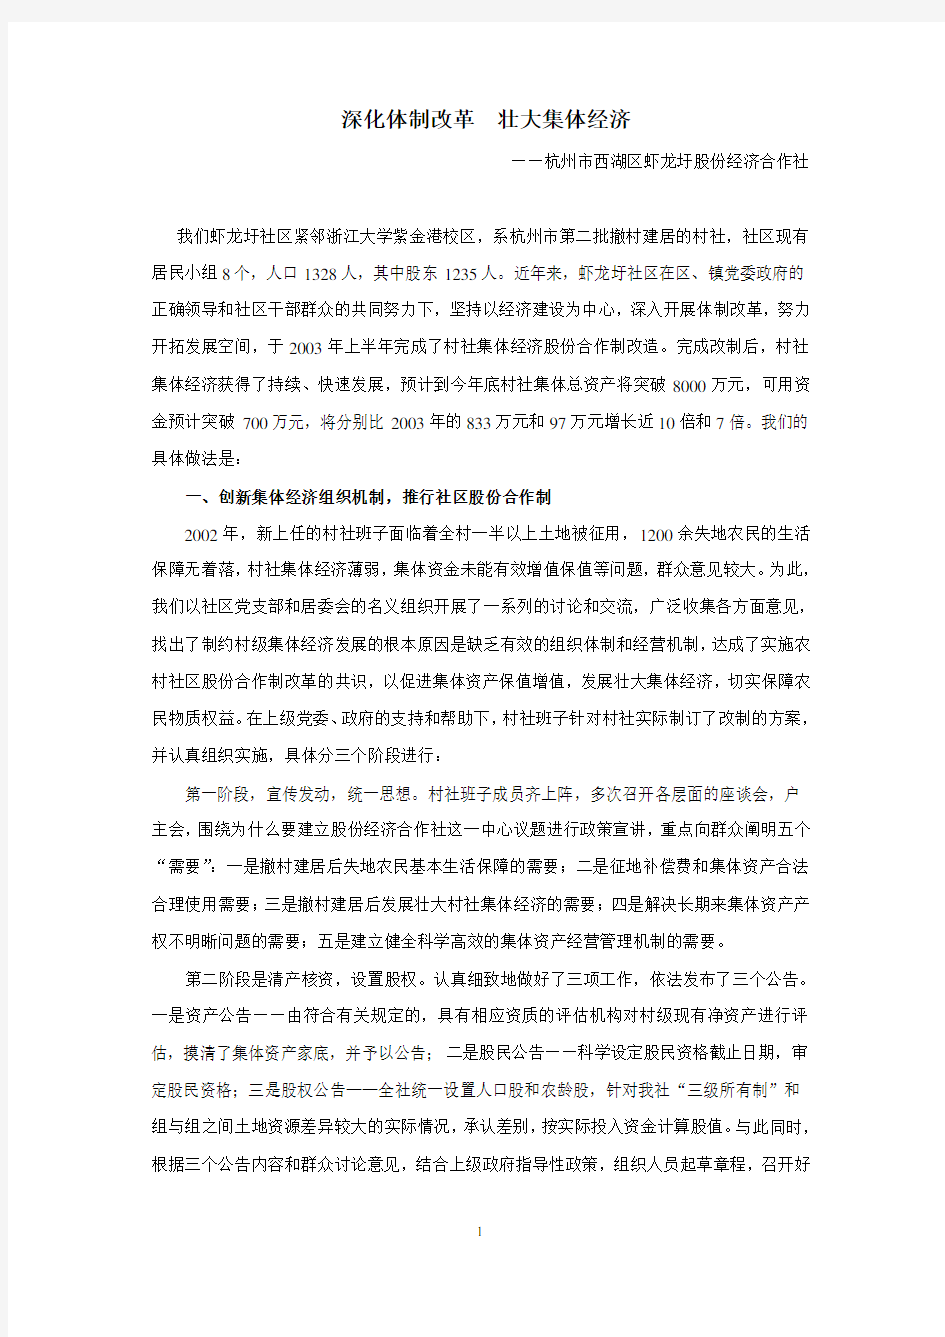 深化体制改革壮大集体经济——杭州市西湖区虾龙圩股份经济合作社